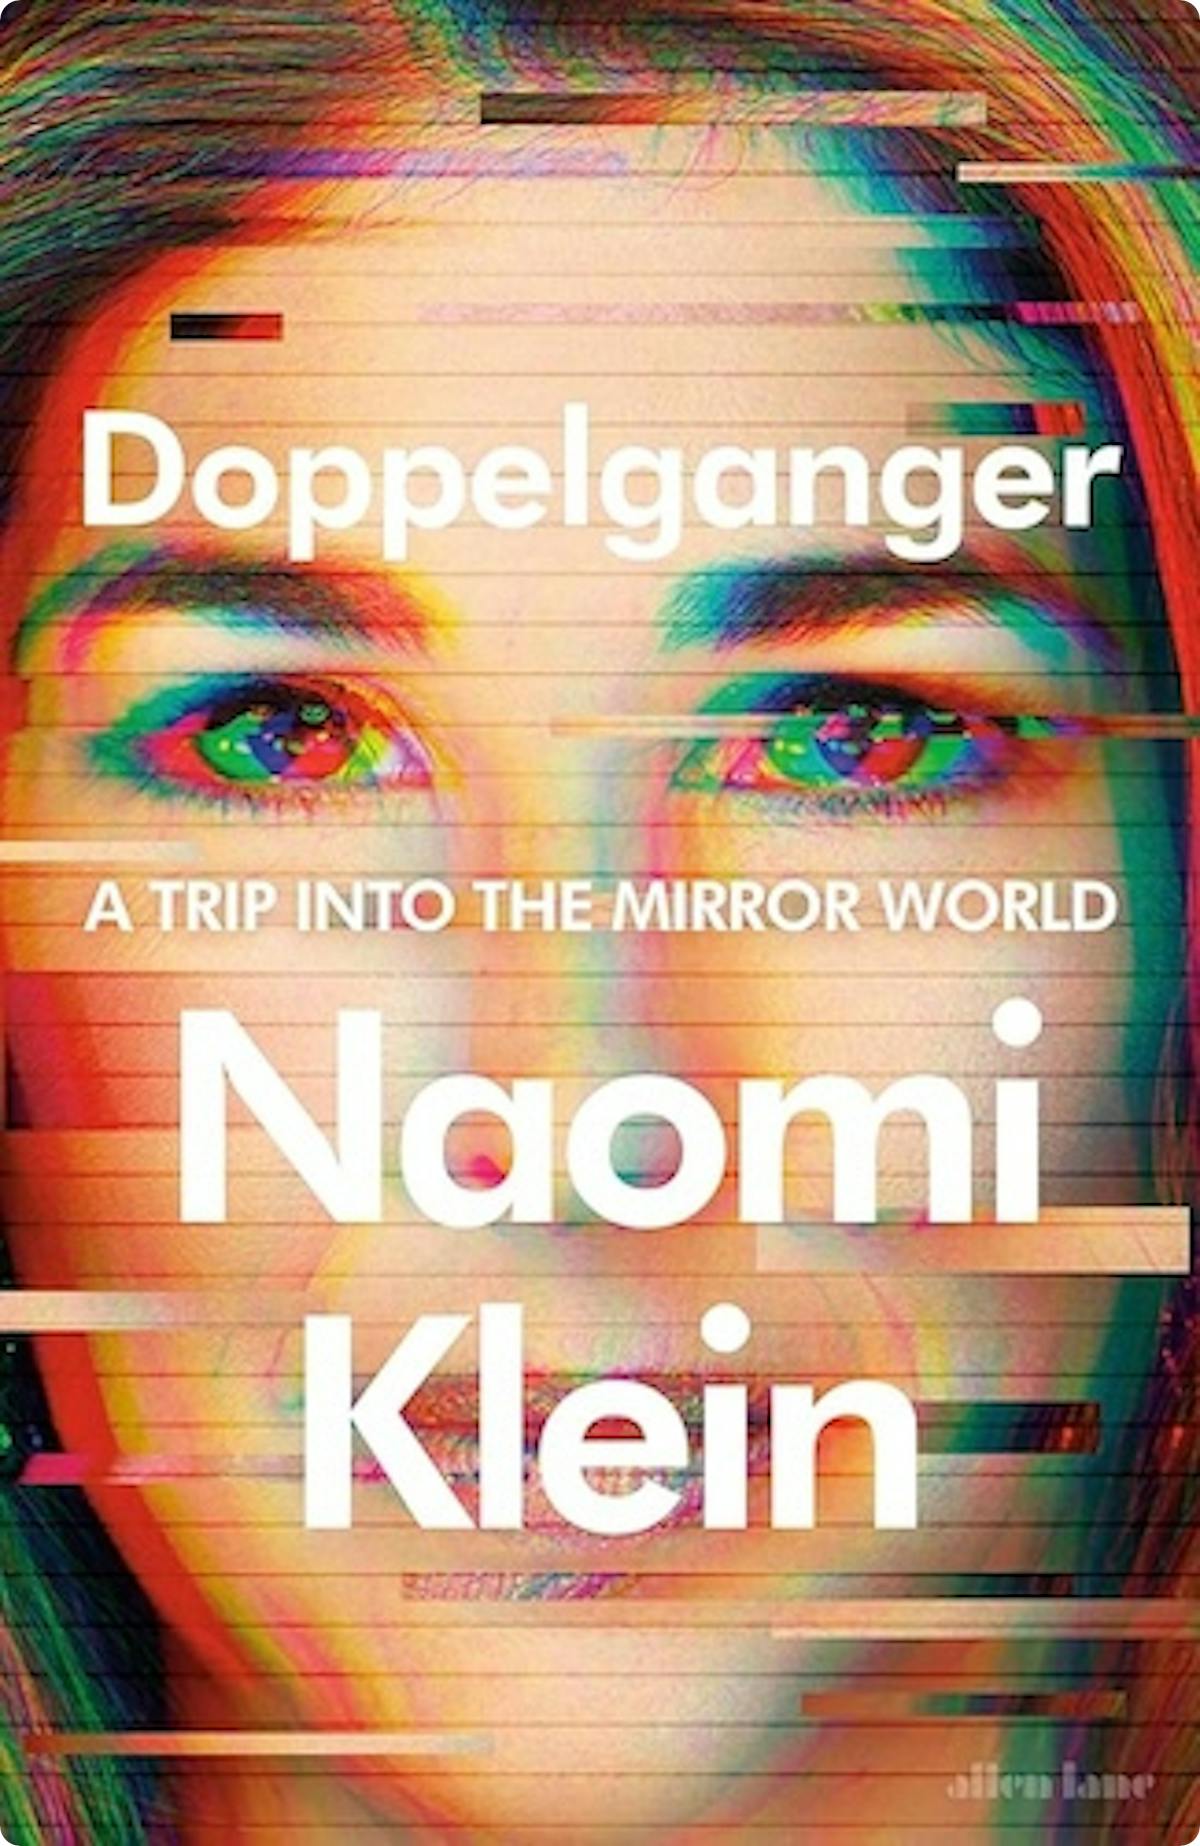 Doppelganger by Naomi Klein.